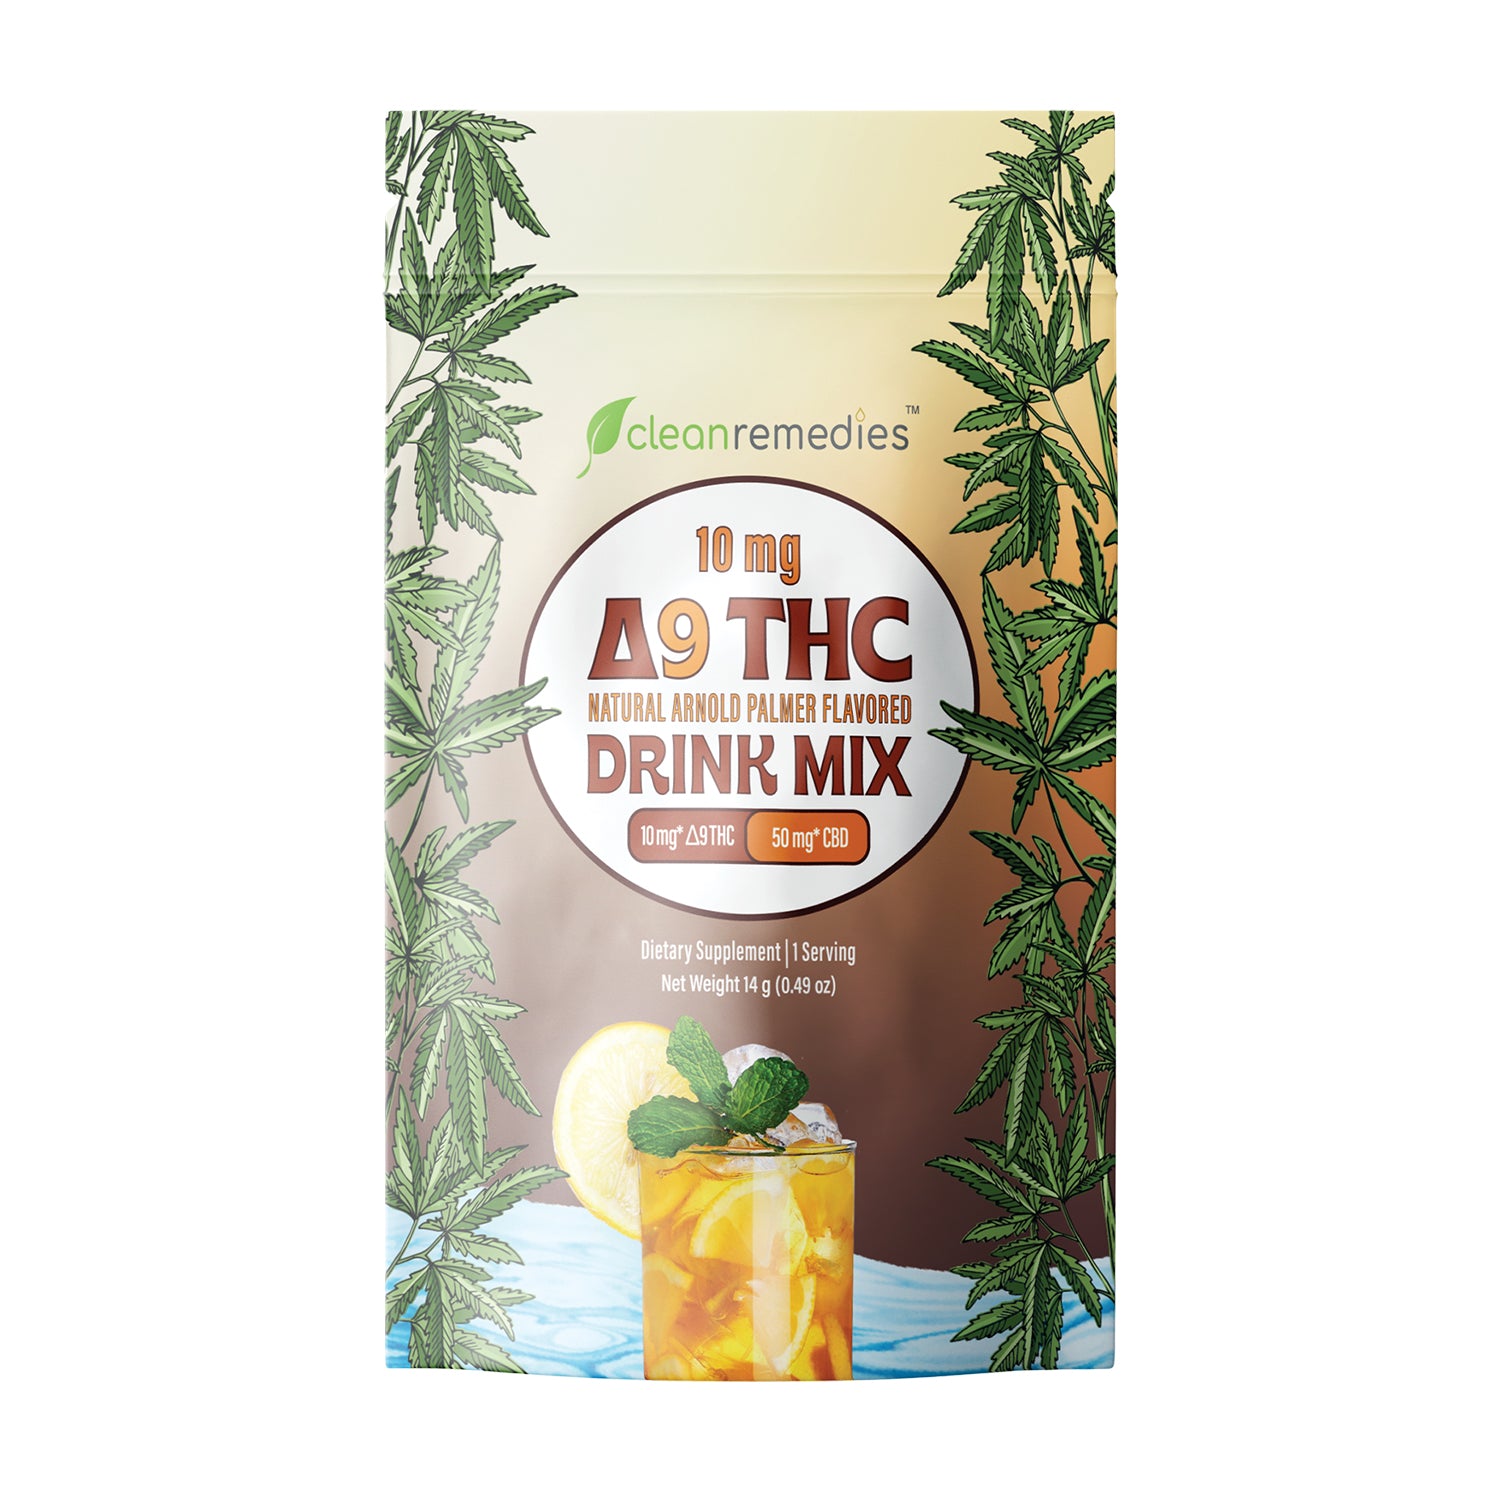 Magic Drink Mix – Legals